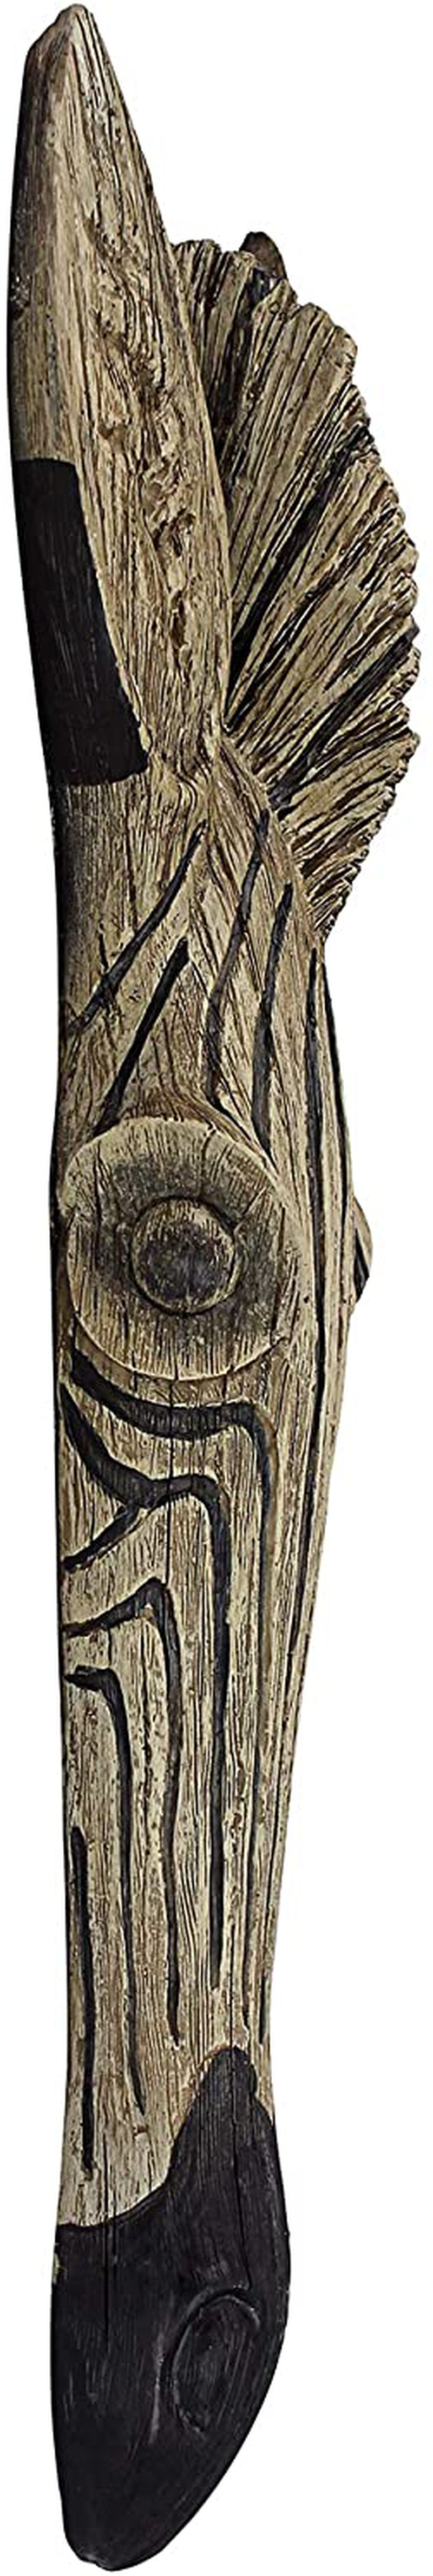 Design Toscano Zebra Animal Mask of the Savannah Wall Decor Sculpture, 16 Inch, Polyresin, Full Color Home & Garden > Decor > Artwork > Sculptures & Statues Design Toscano   